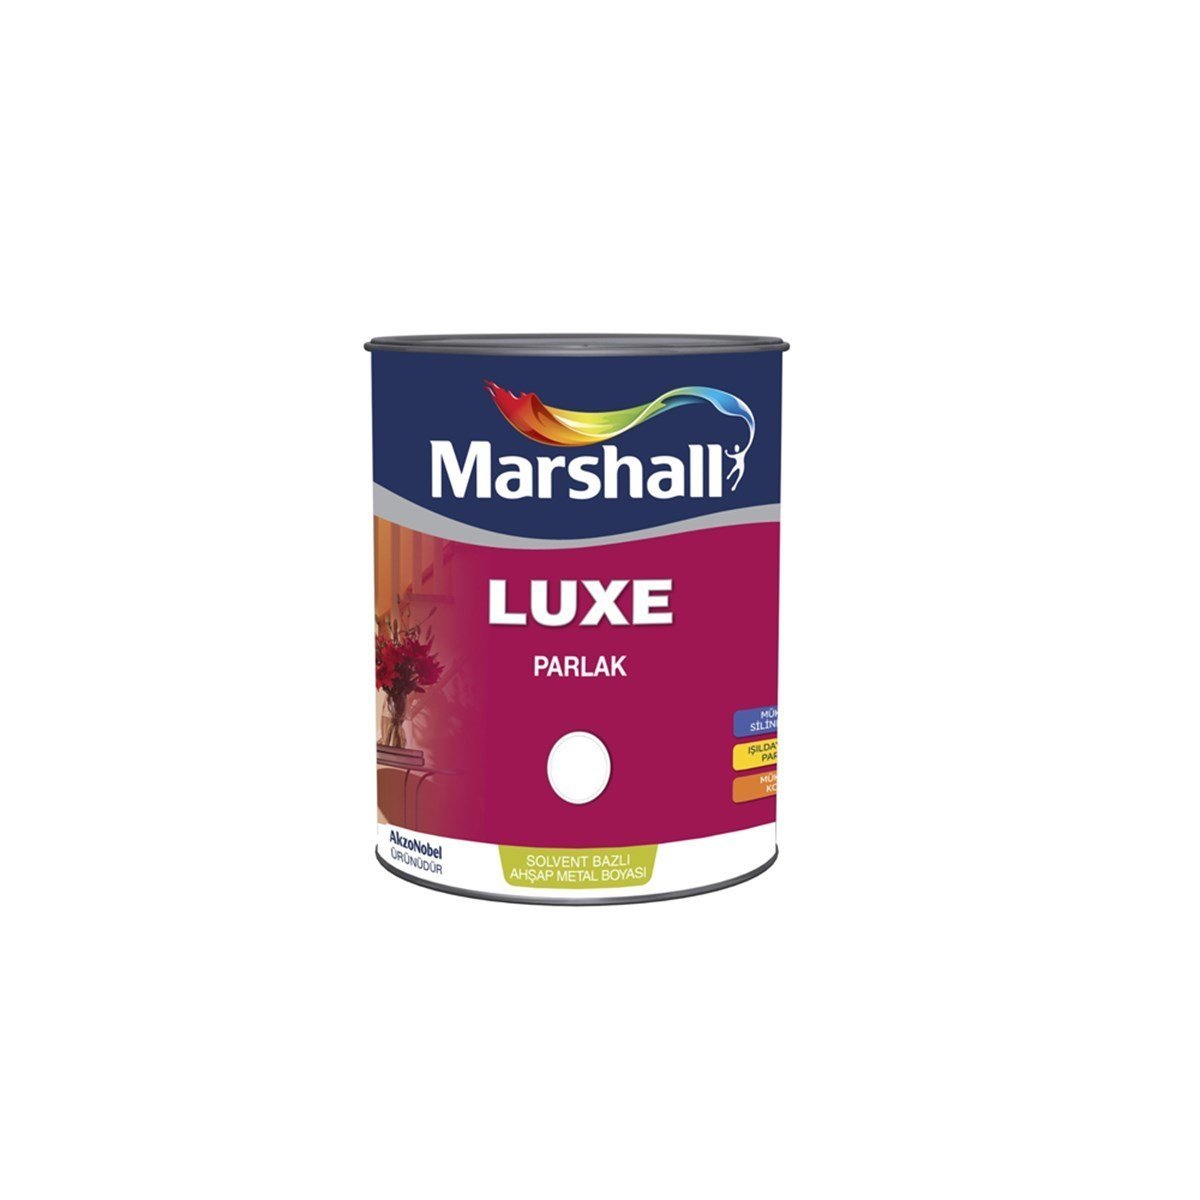 Marshall Luxe Parlak Sentetik Yağlı Boya 2,5 Lt